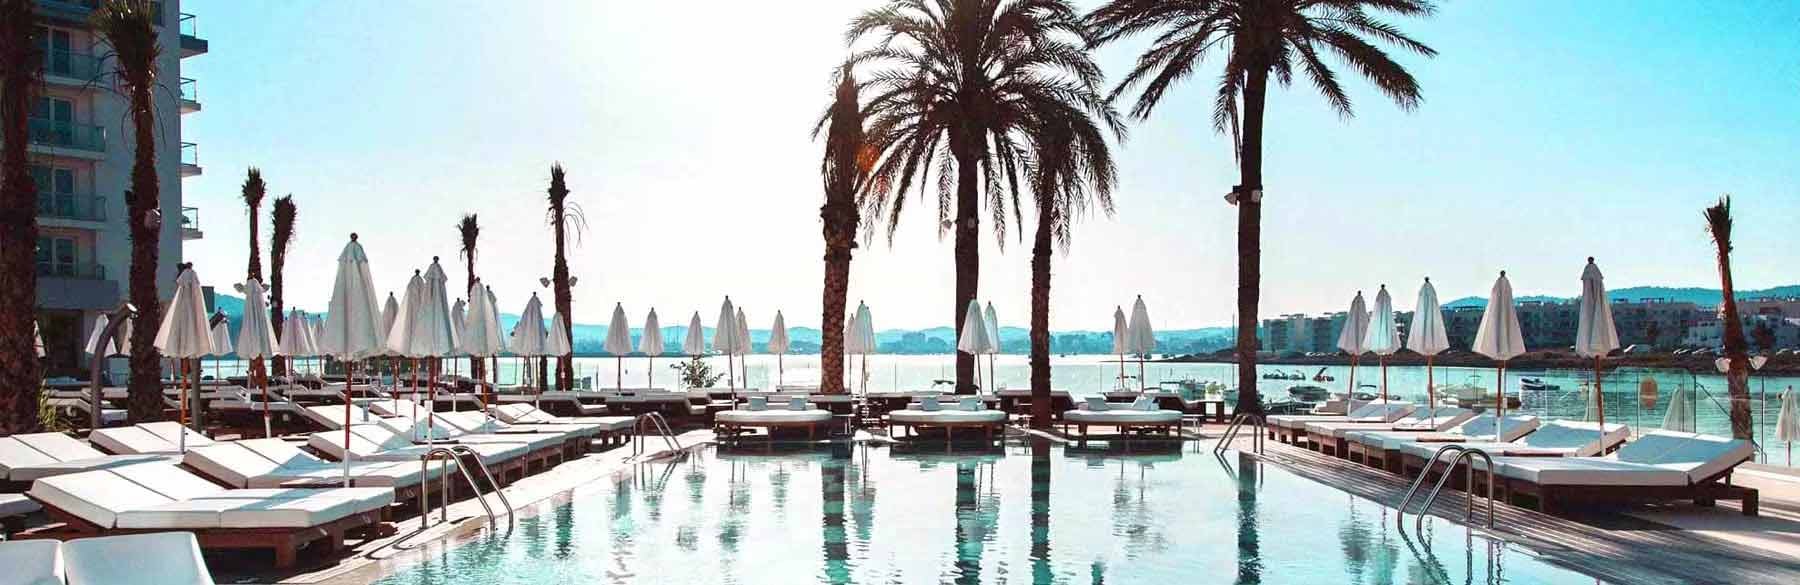 Amare Beach Hotel Ibiza